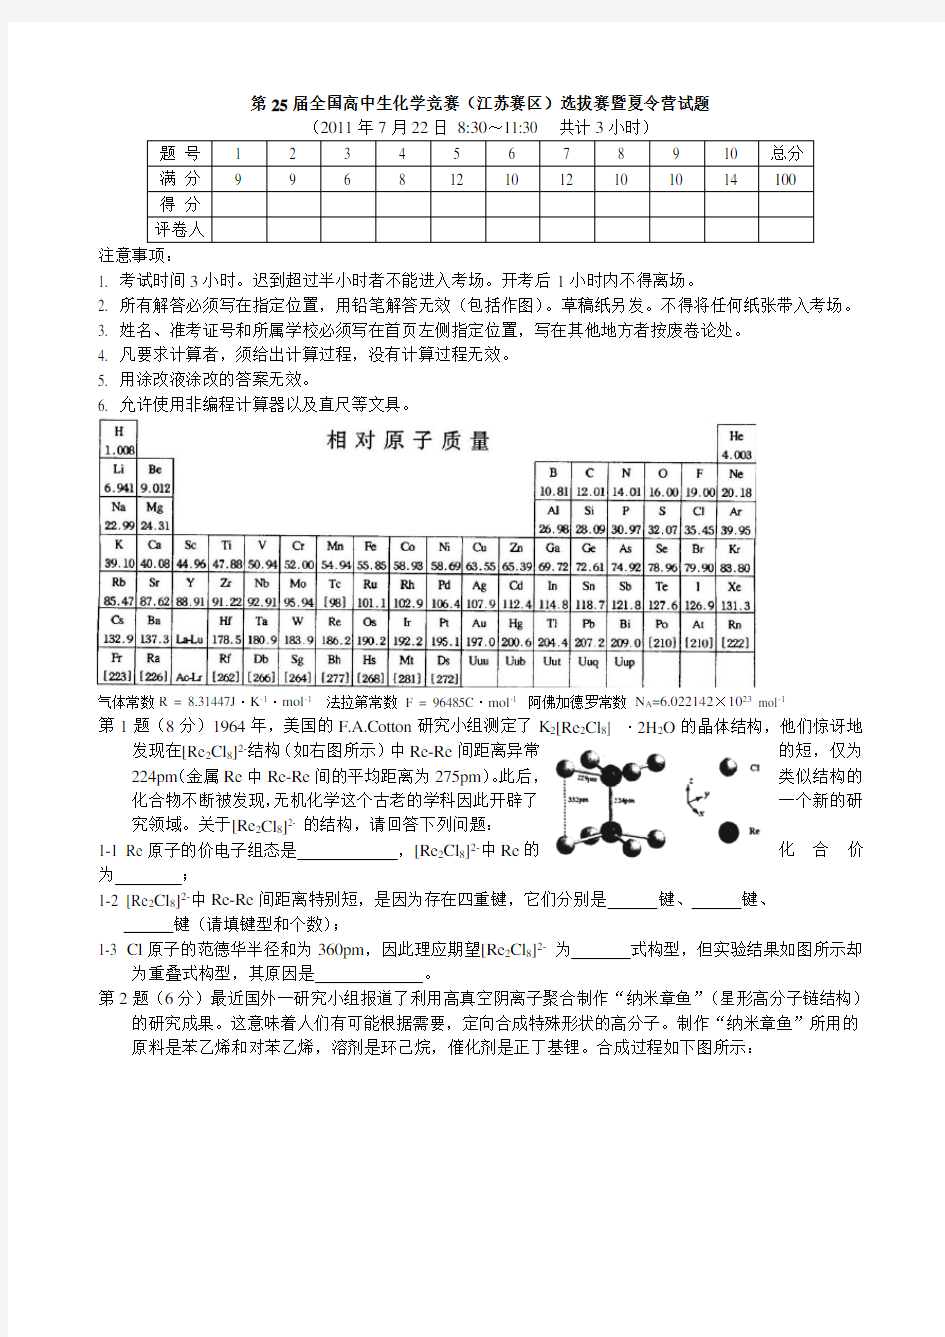 全国高中生化学竞赛(江苏赛区)选拔赛暨夏令营